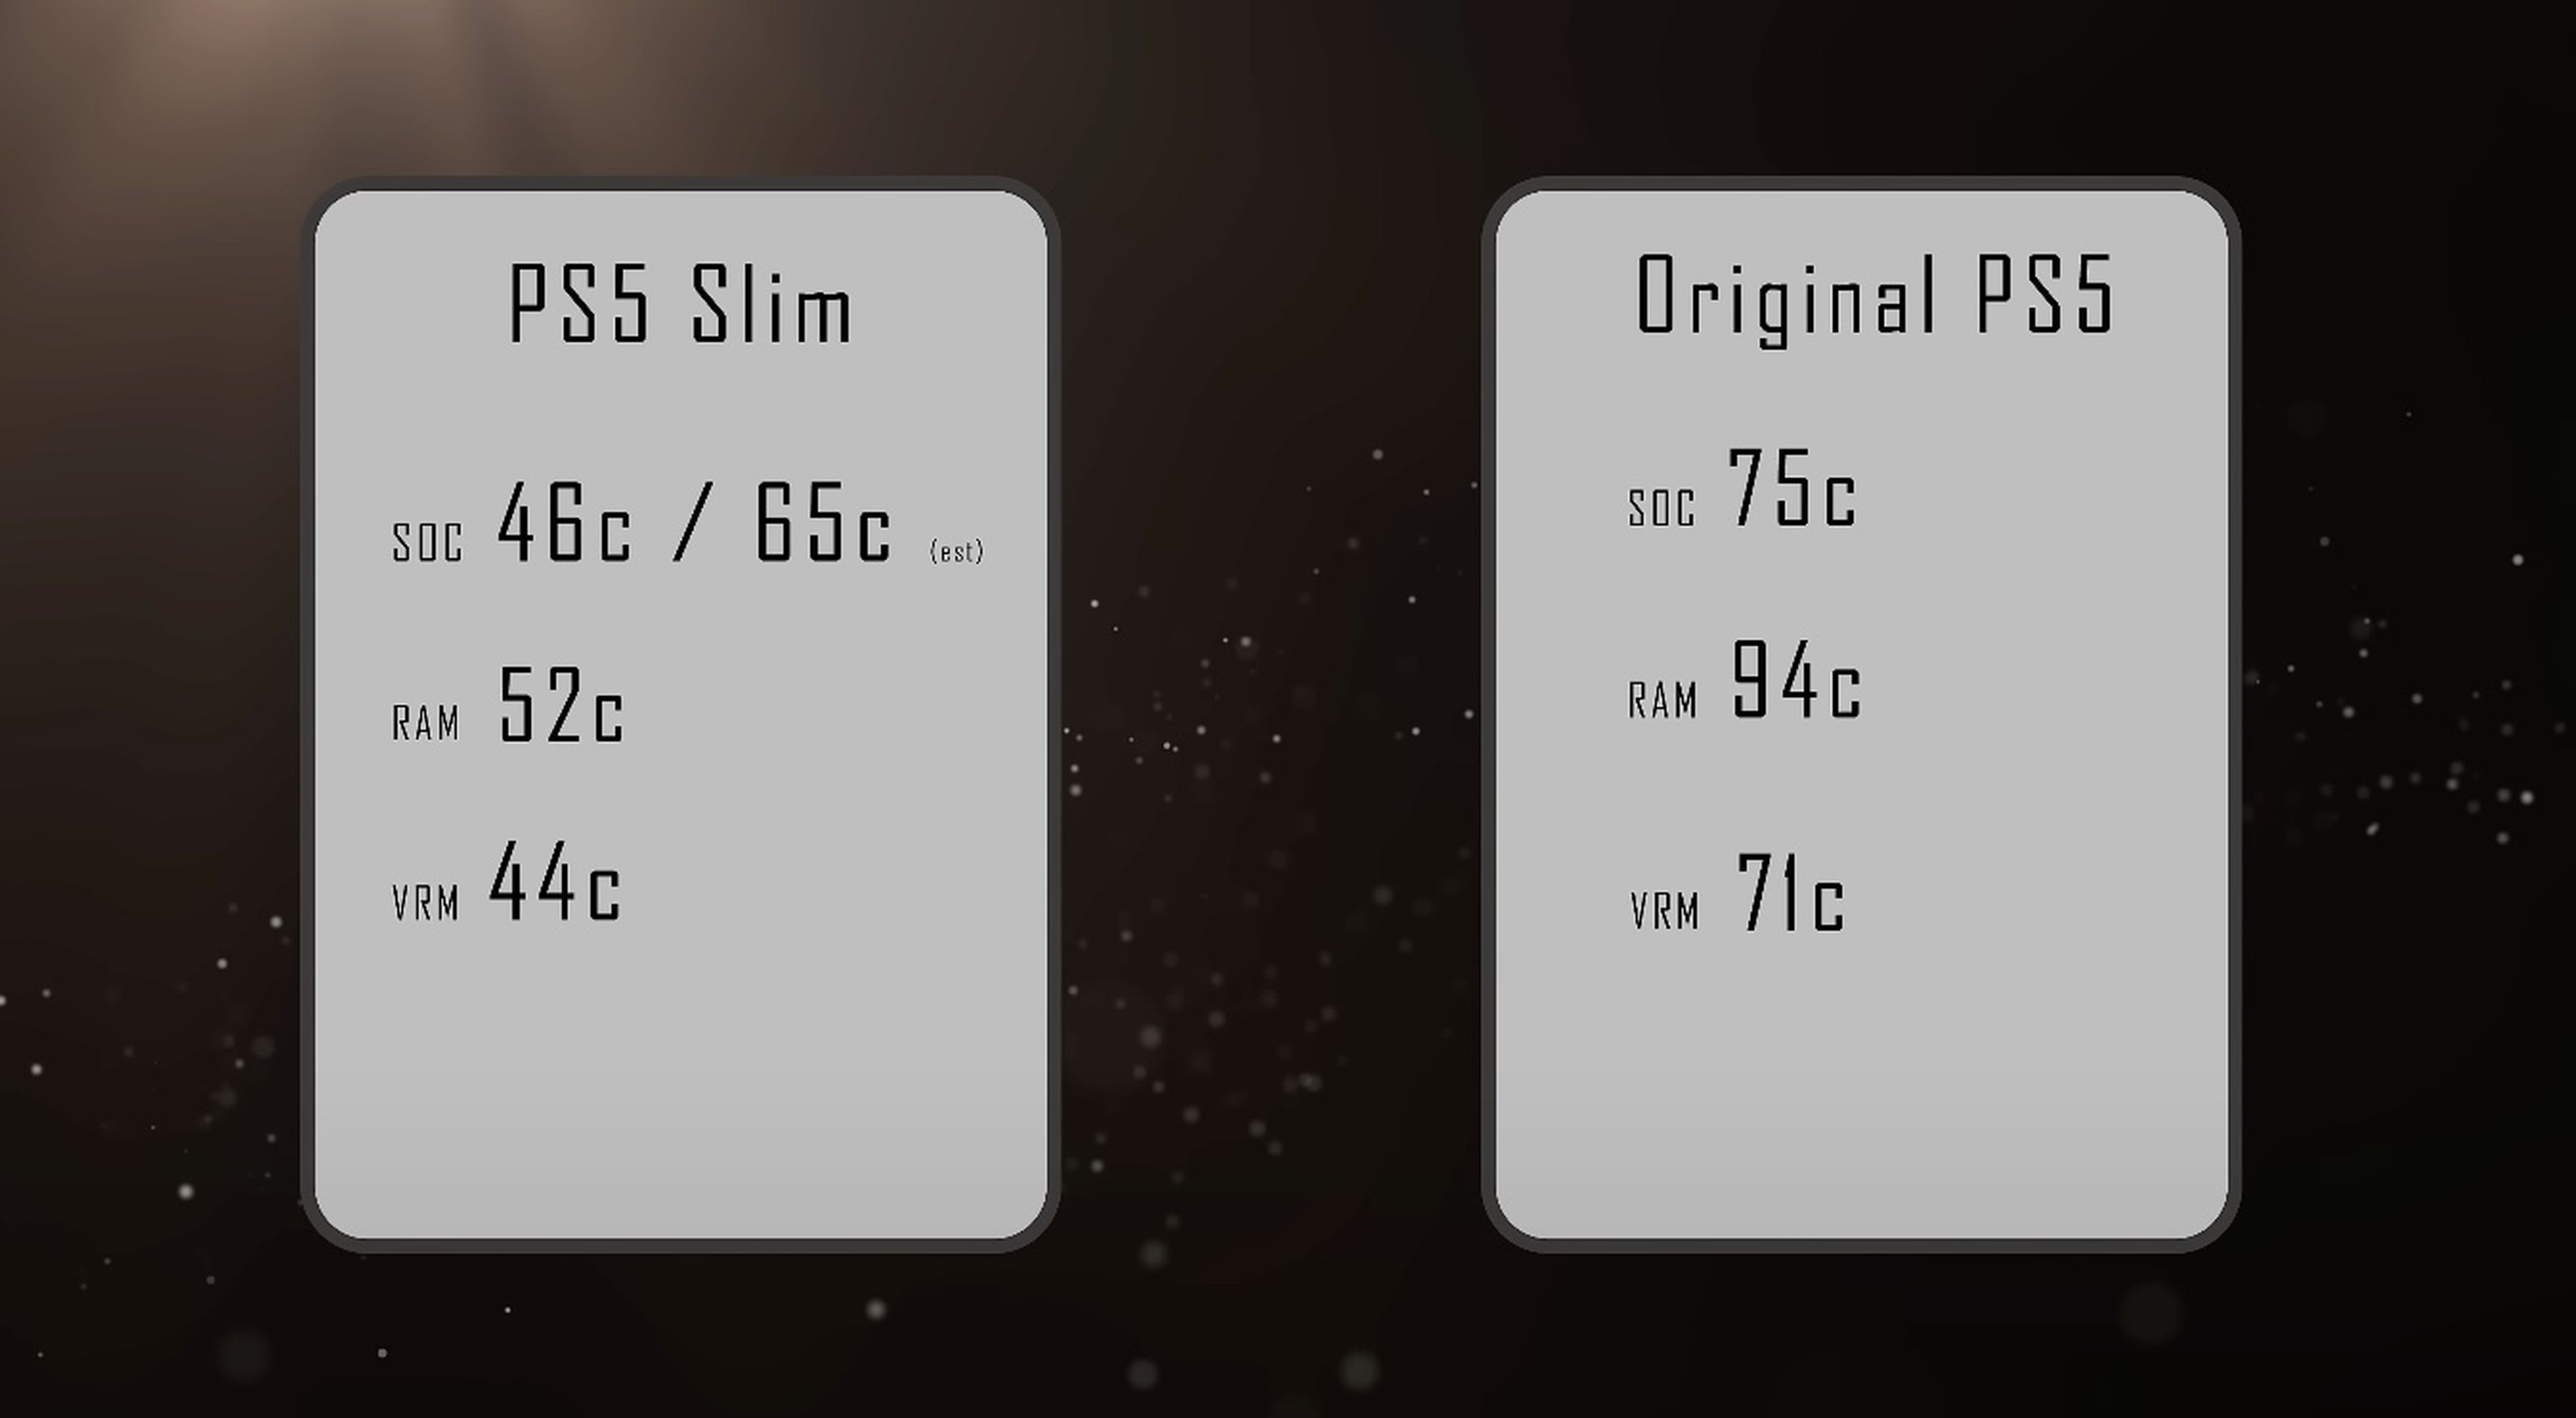 Desmontan una PS5 Slim para ver su interior, temperatura y consumo